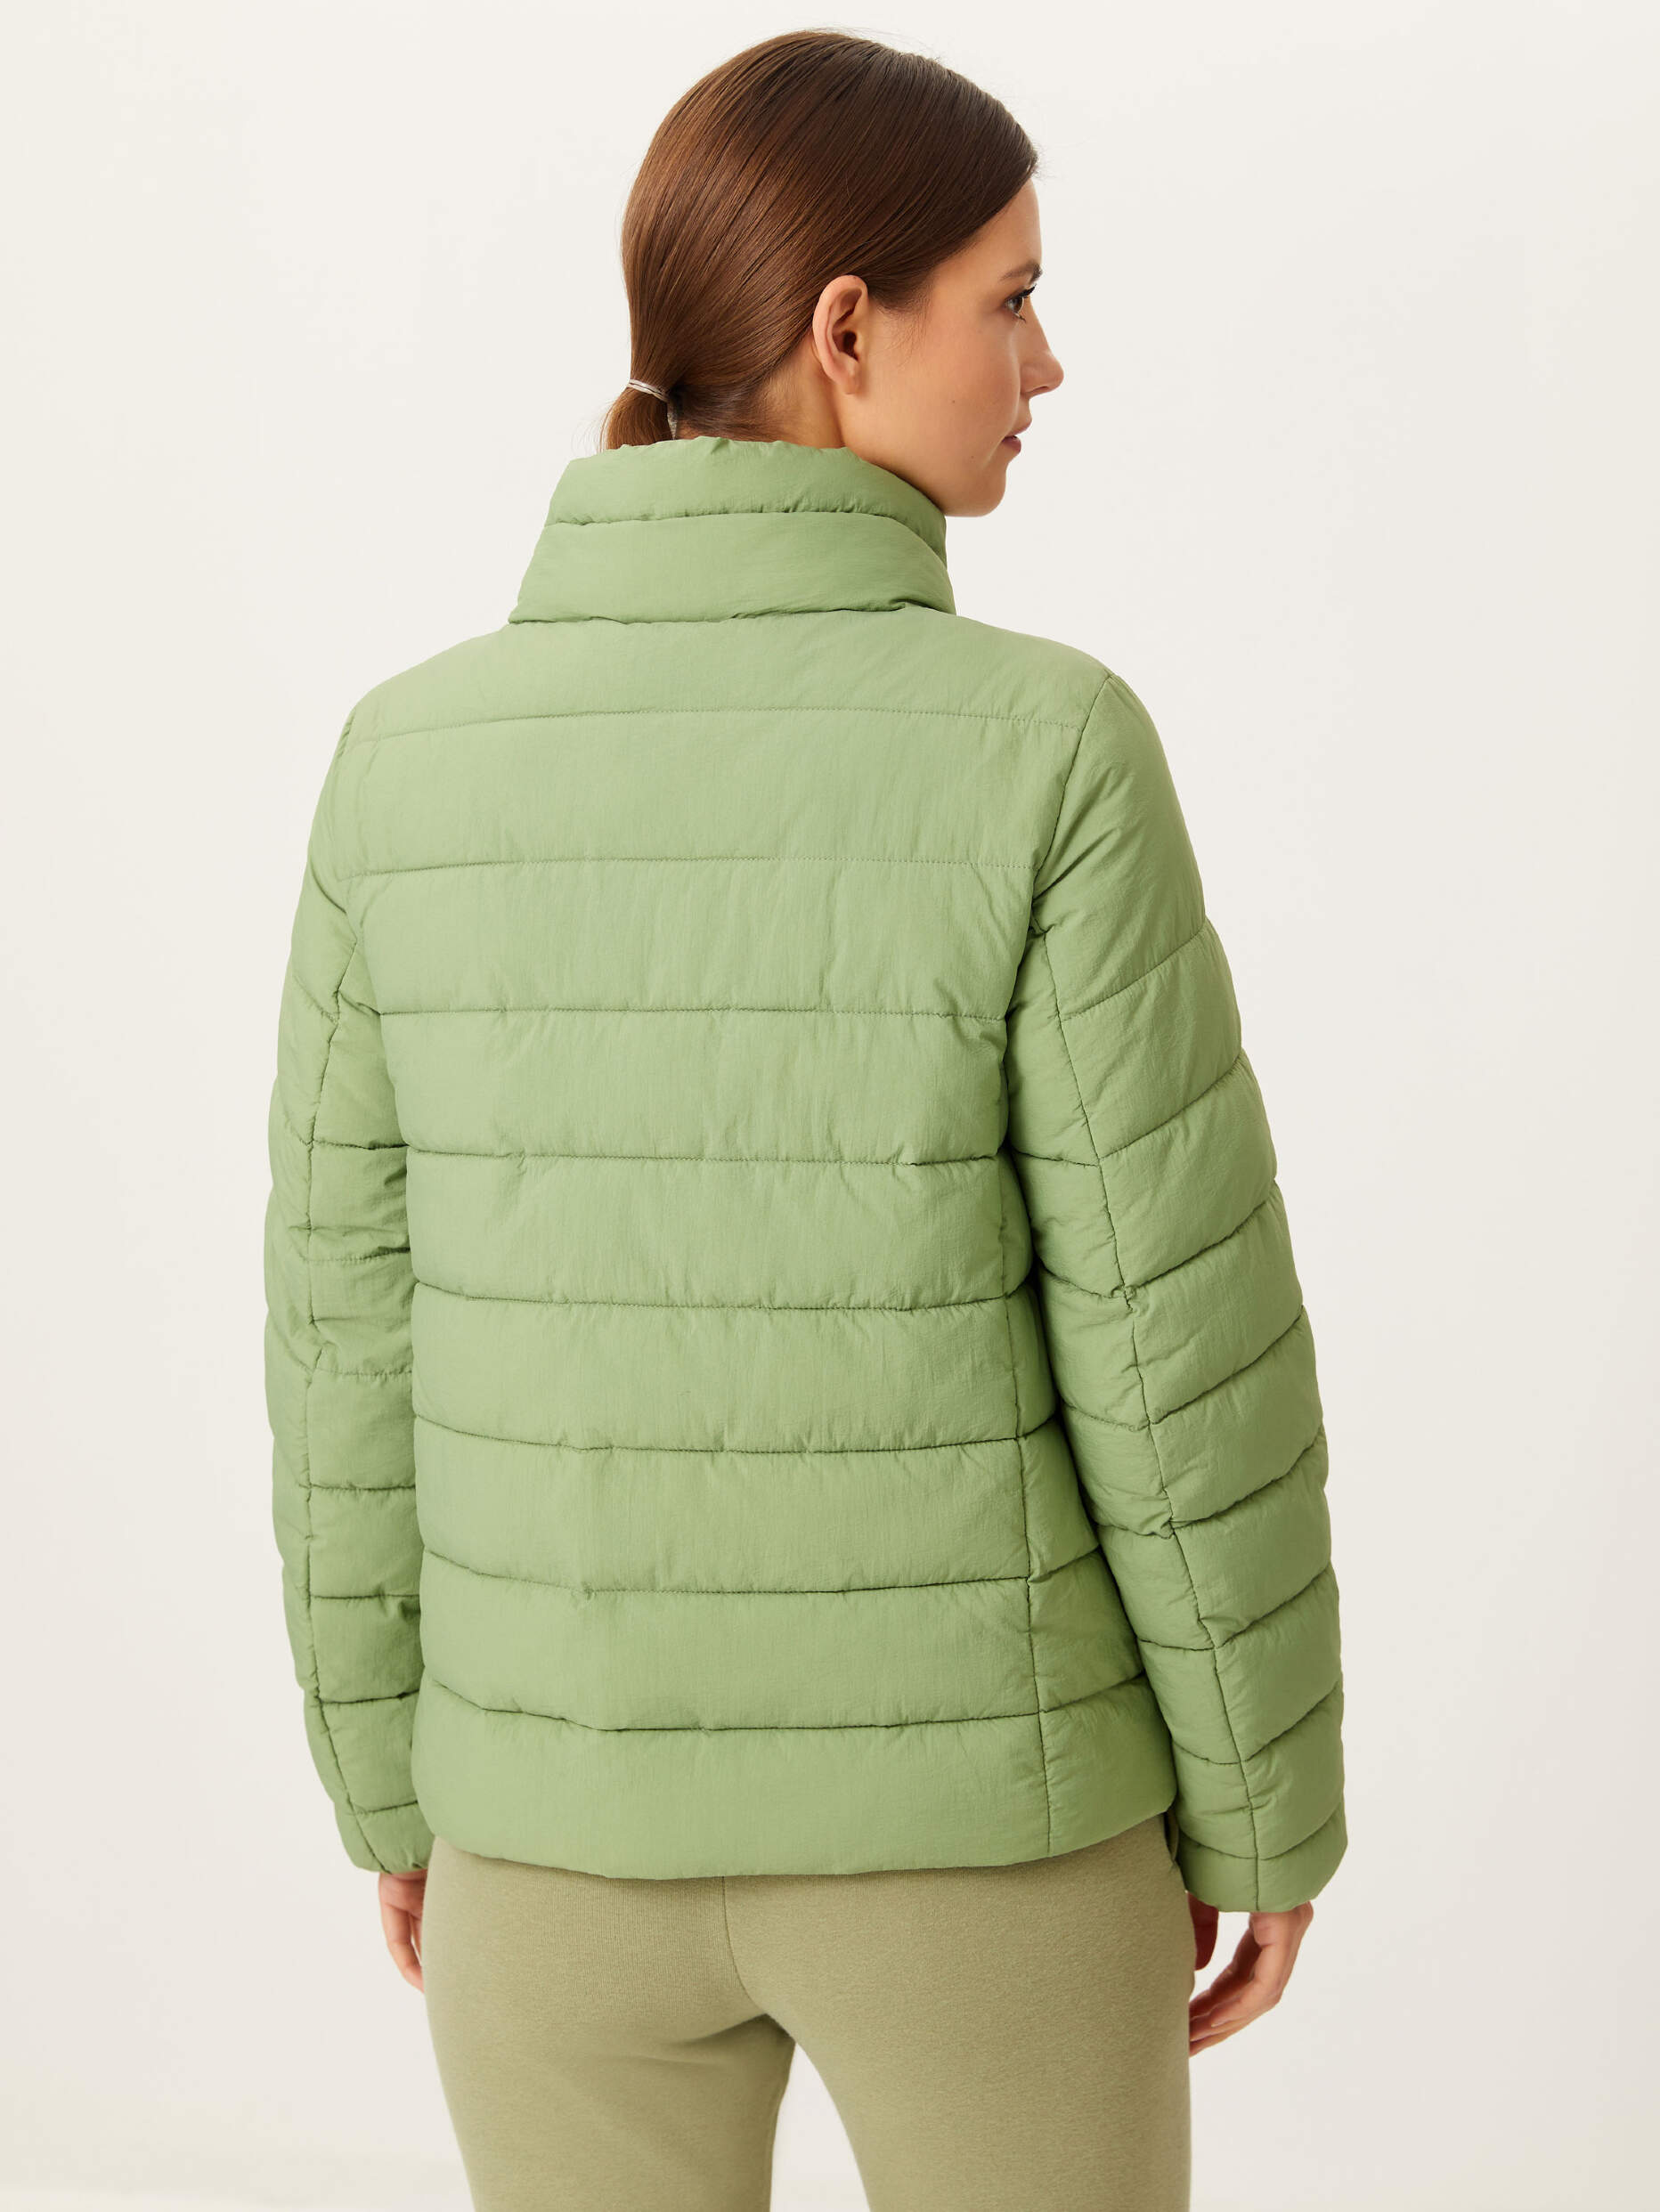 Куртка sela демисезонная. Куртка Sela зеленая. Sela куртка зеленая женская.